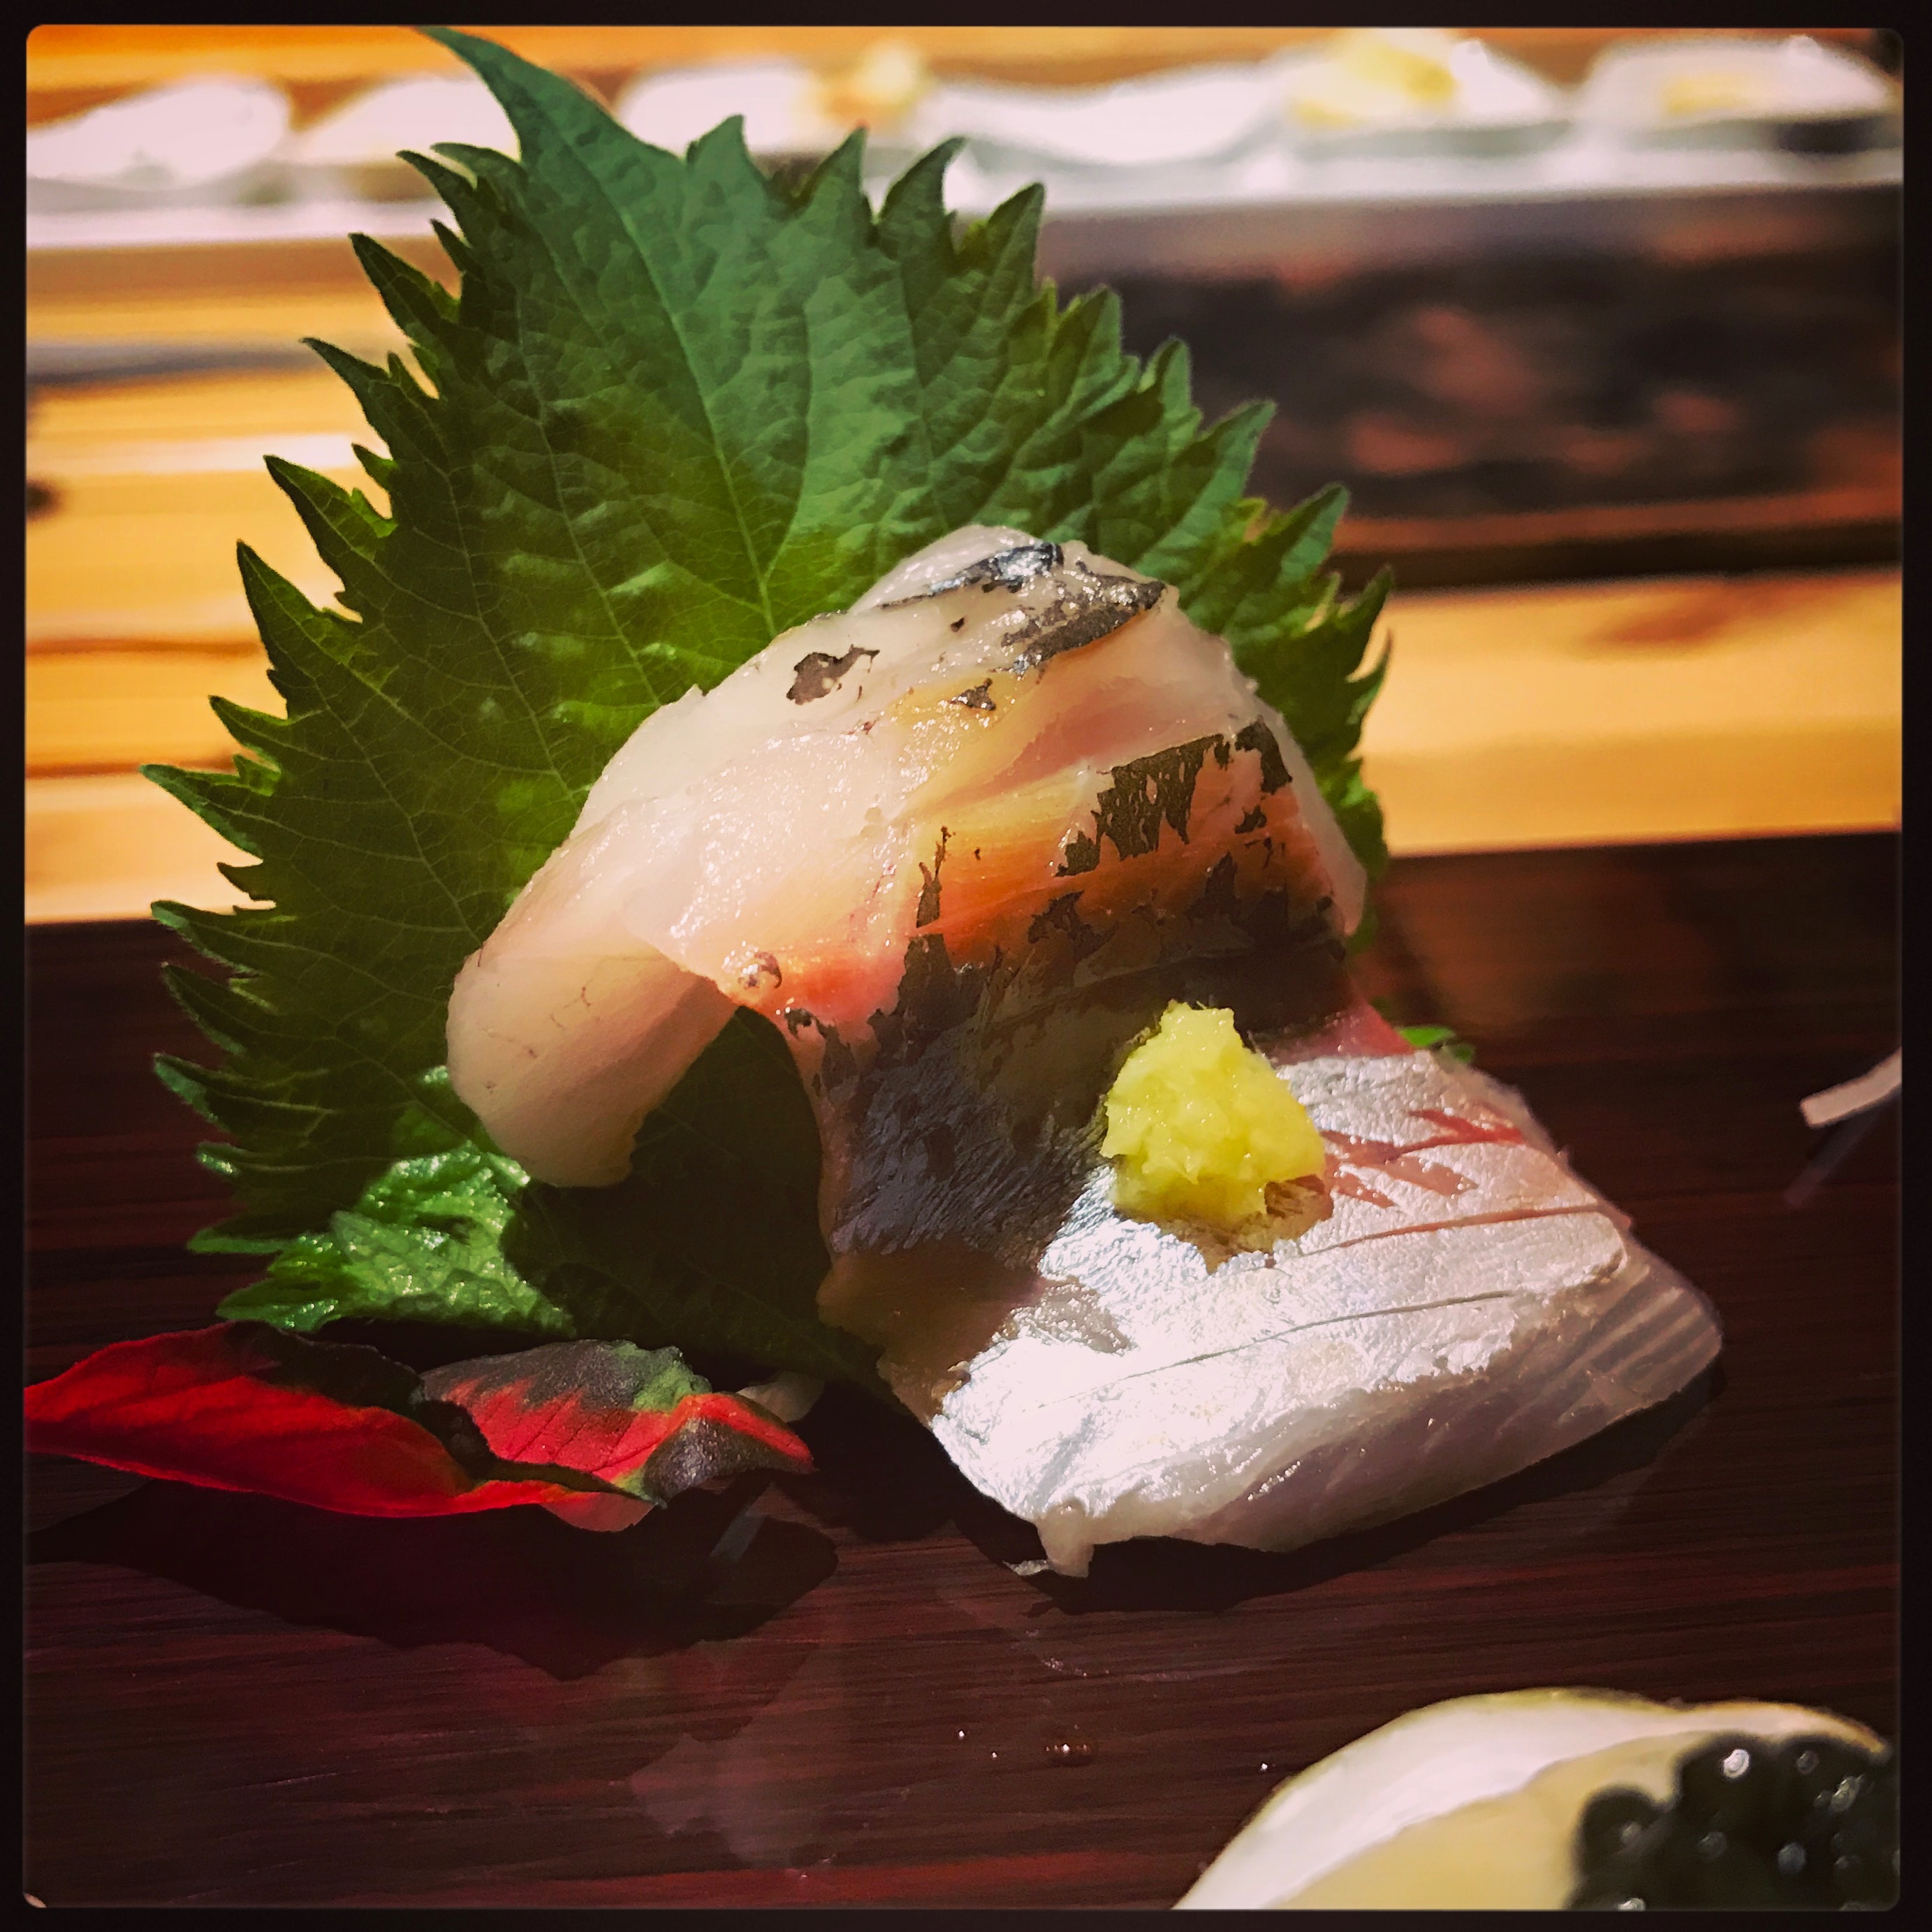 Sushi Ran - omakase - aji line caught horse mackerel sashimi